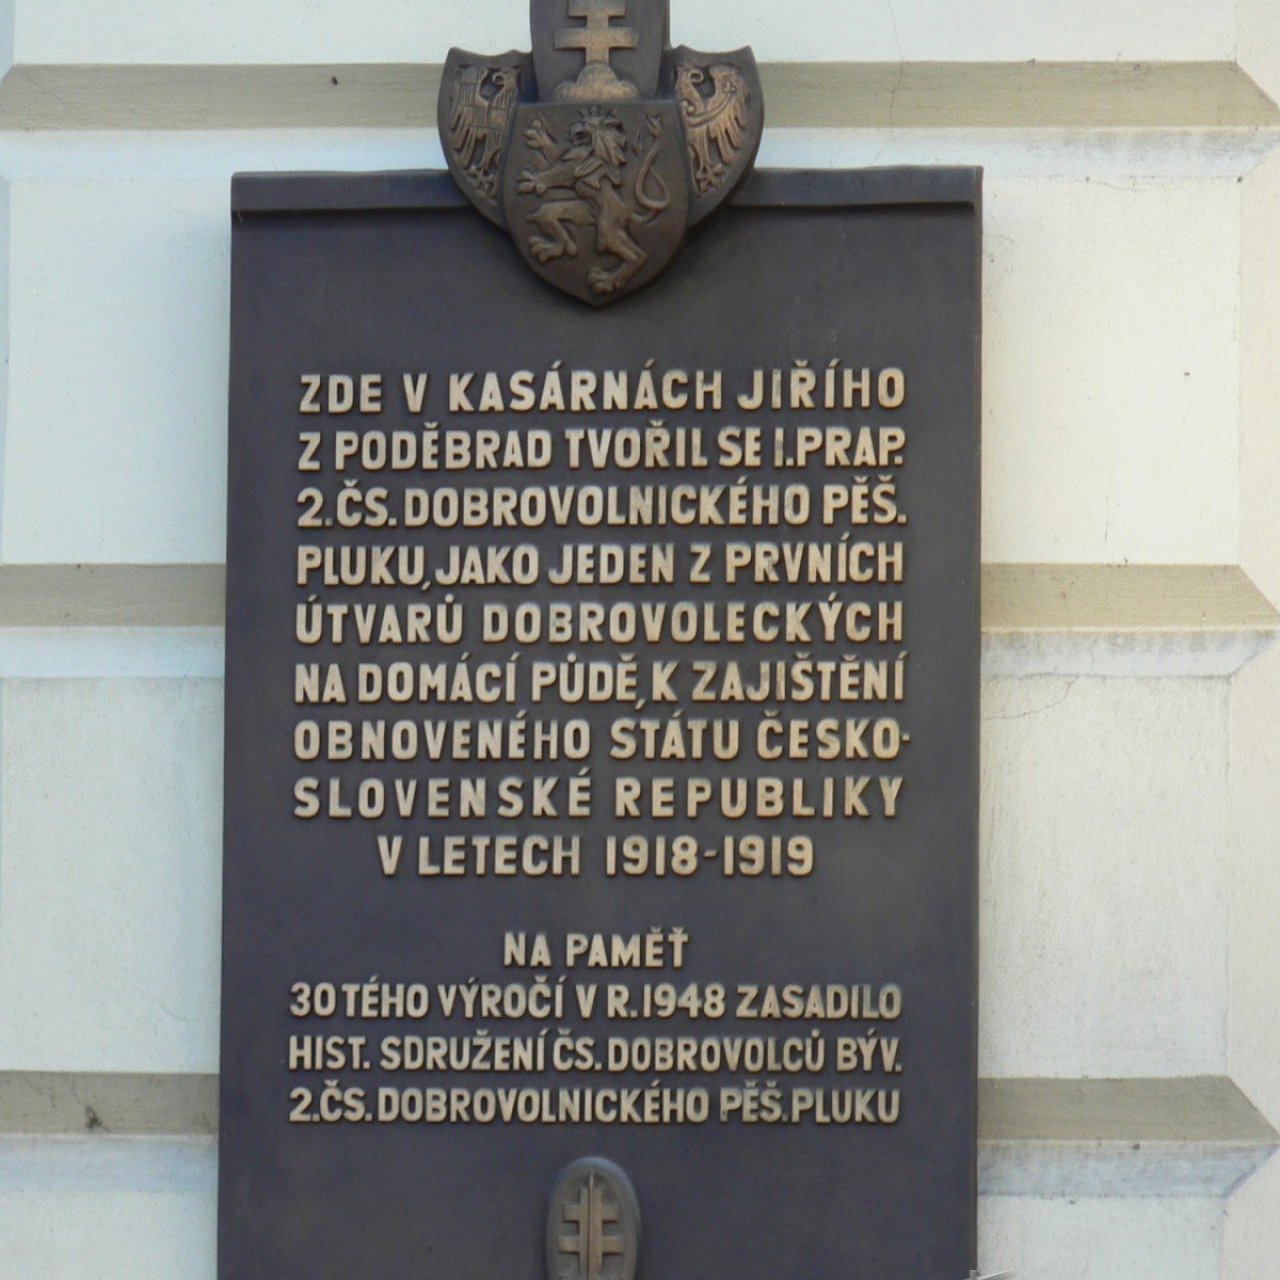 Praha 1 - Náměstí Republiky 1 - pamětní deska 2. čs. dobrovolnický pěší pluk